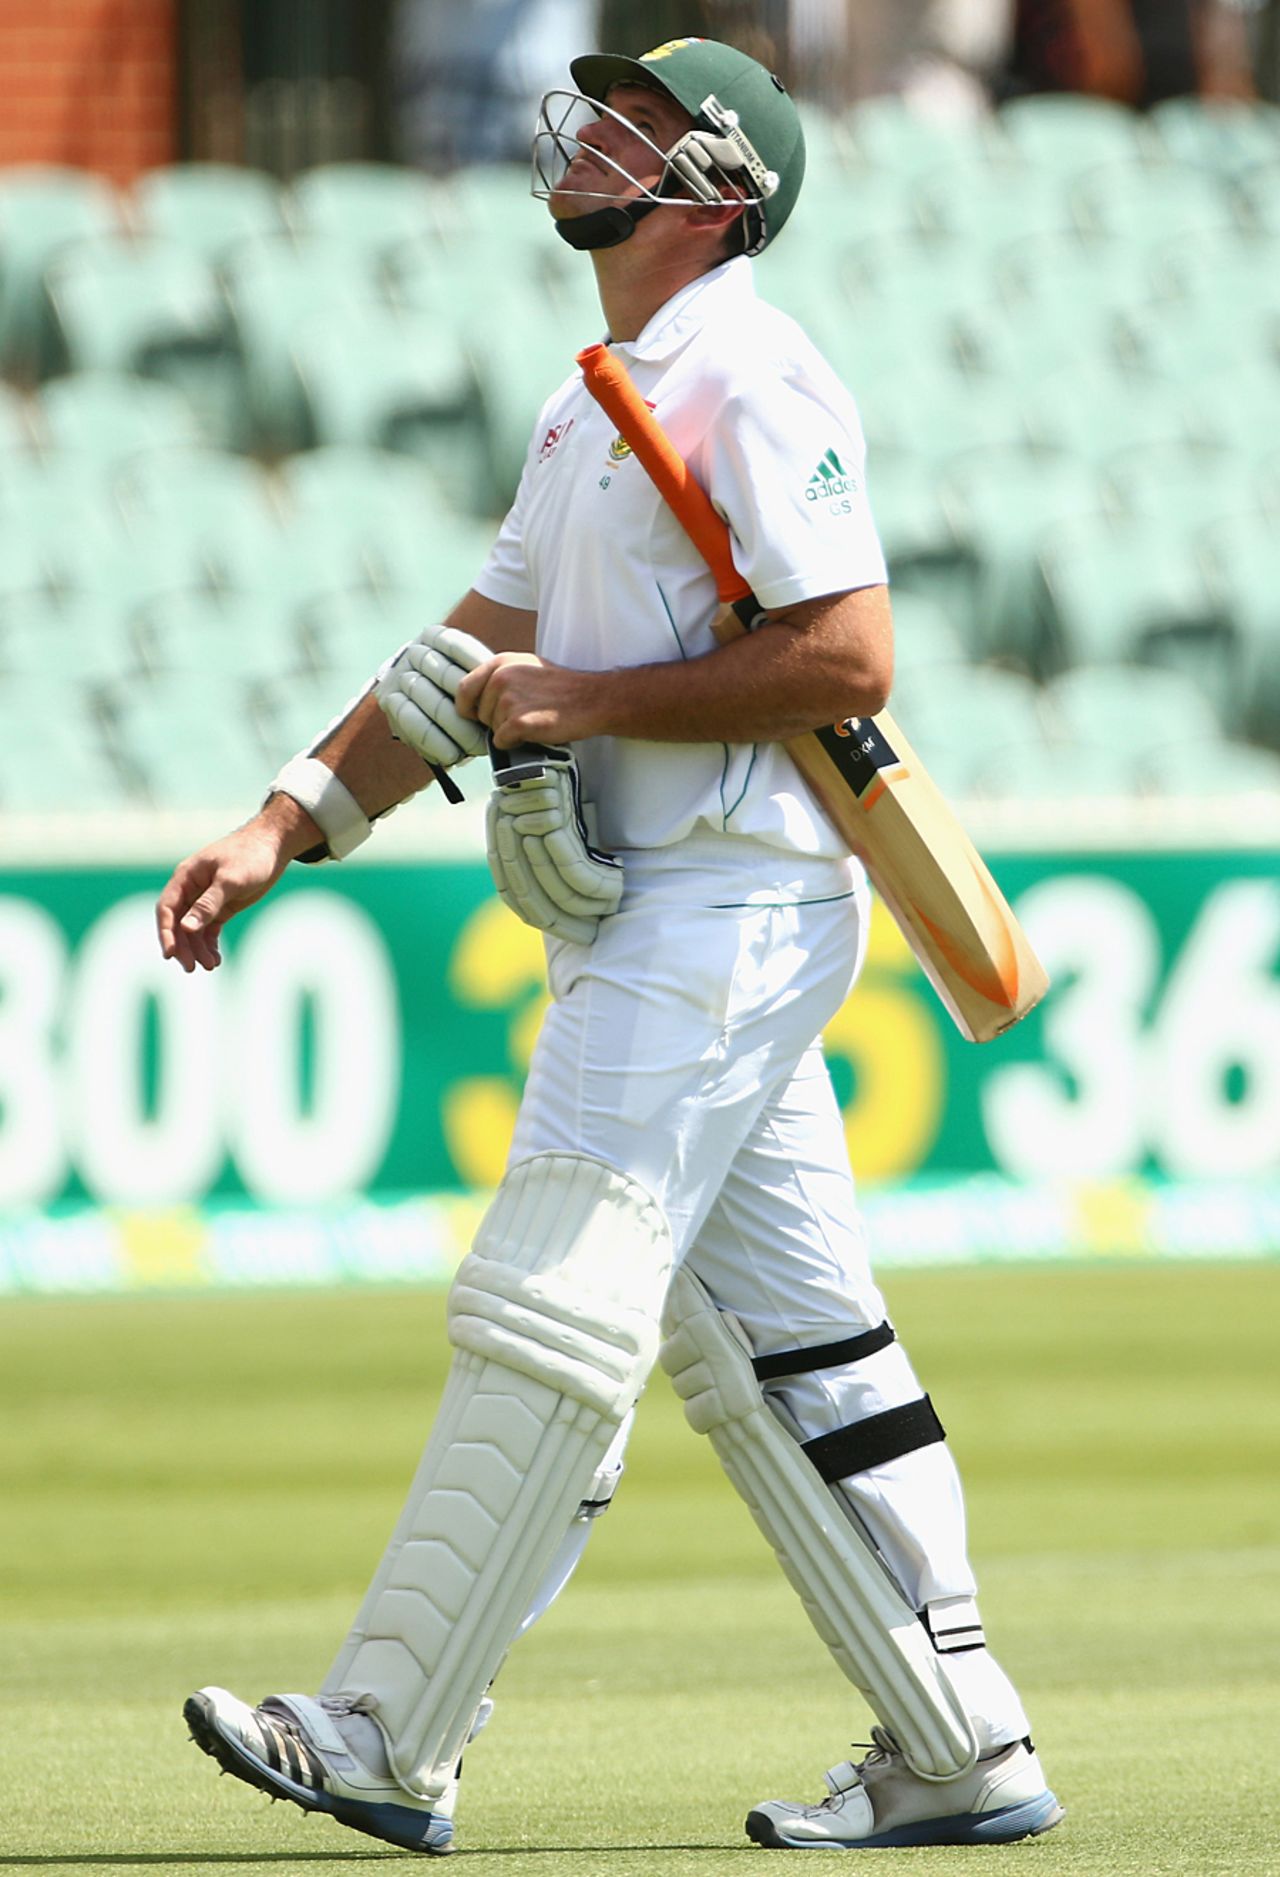 Graeme Smith walks back after being dismissed, Australia v South Africa, 2nd Test, Adelaide, 3rd day, November 24, 2012